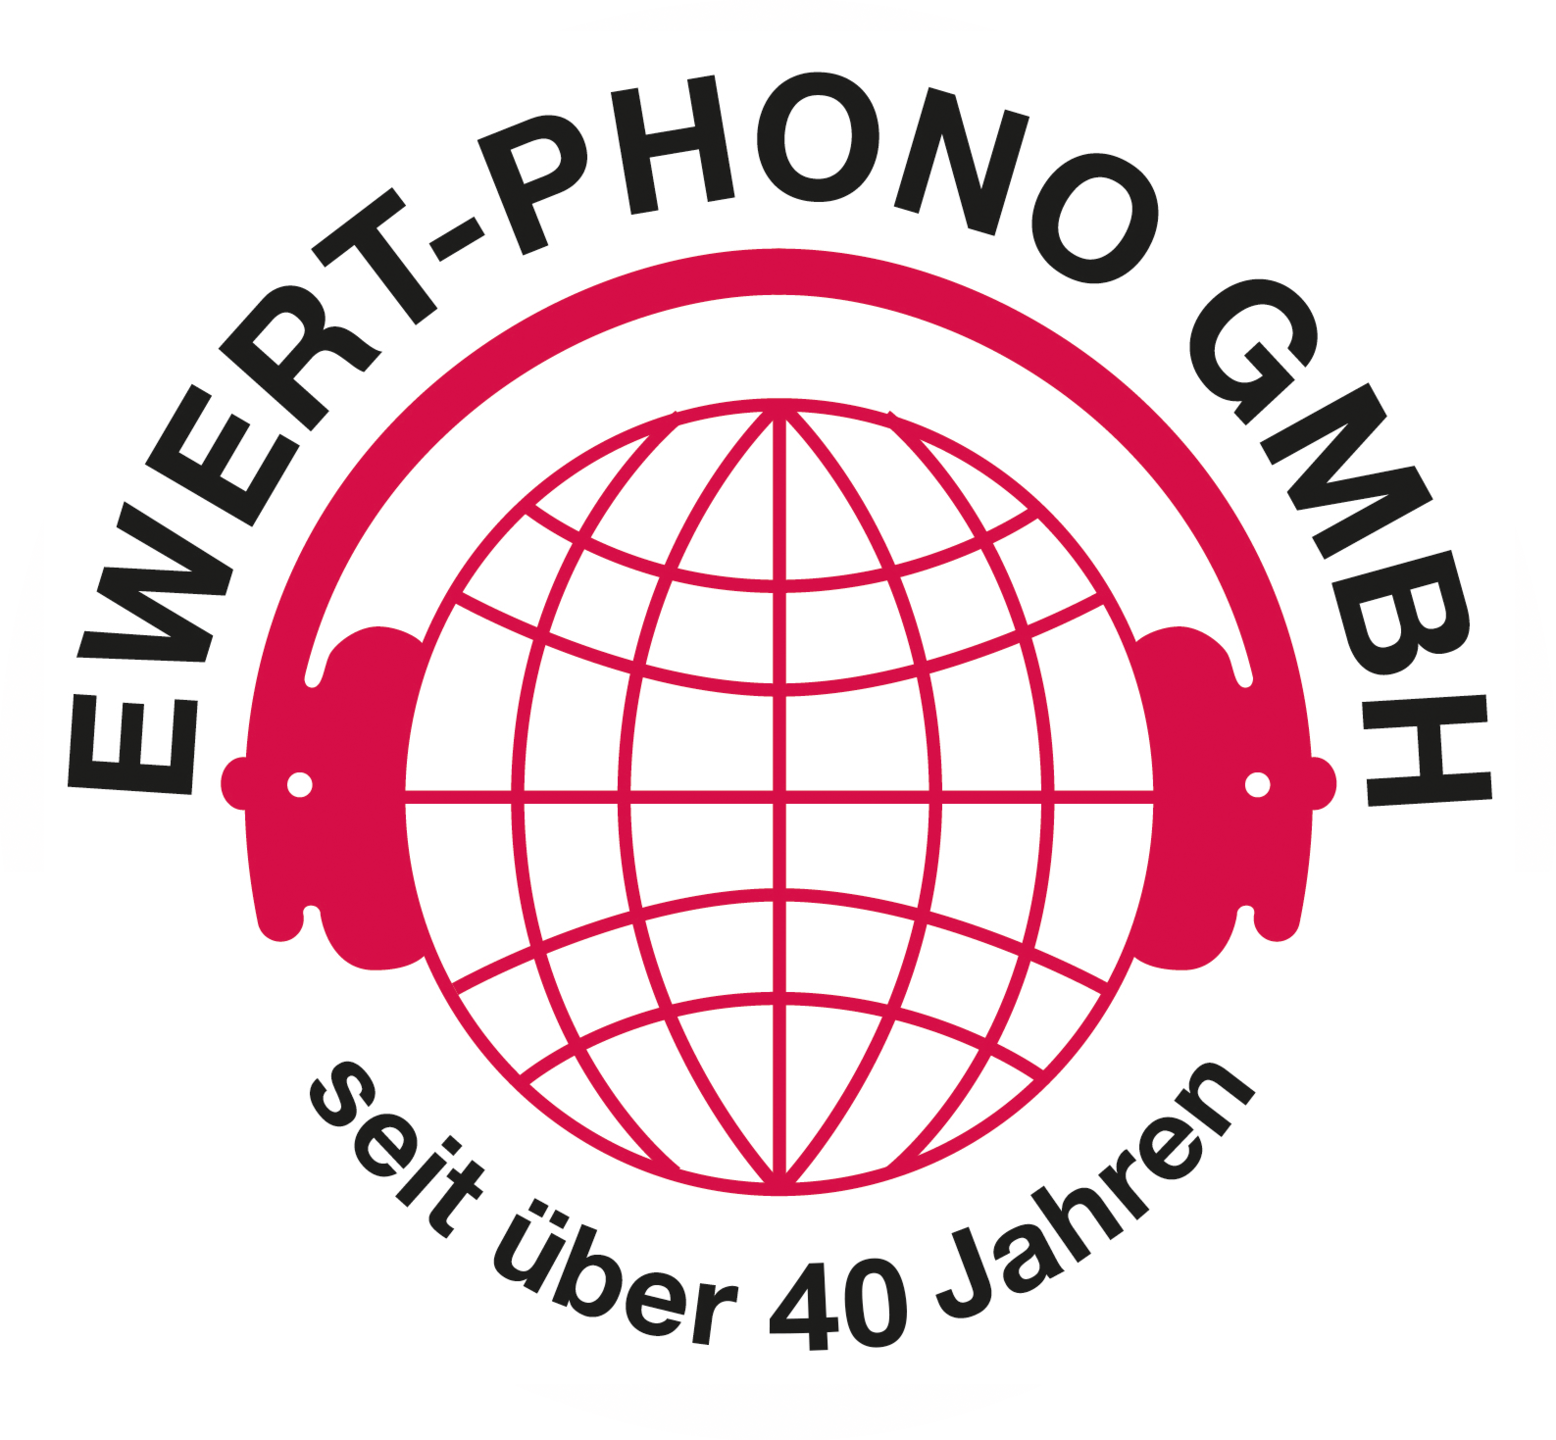 EWERT-PHONO GMBH